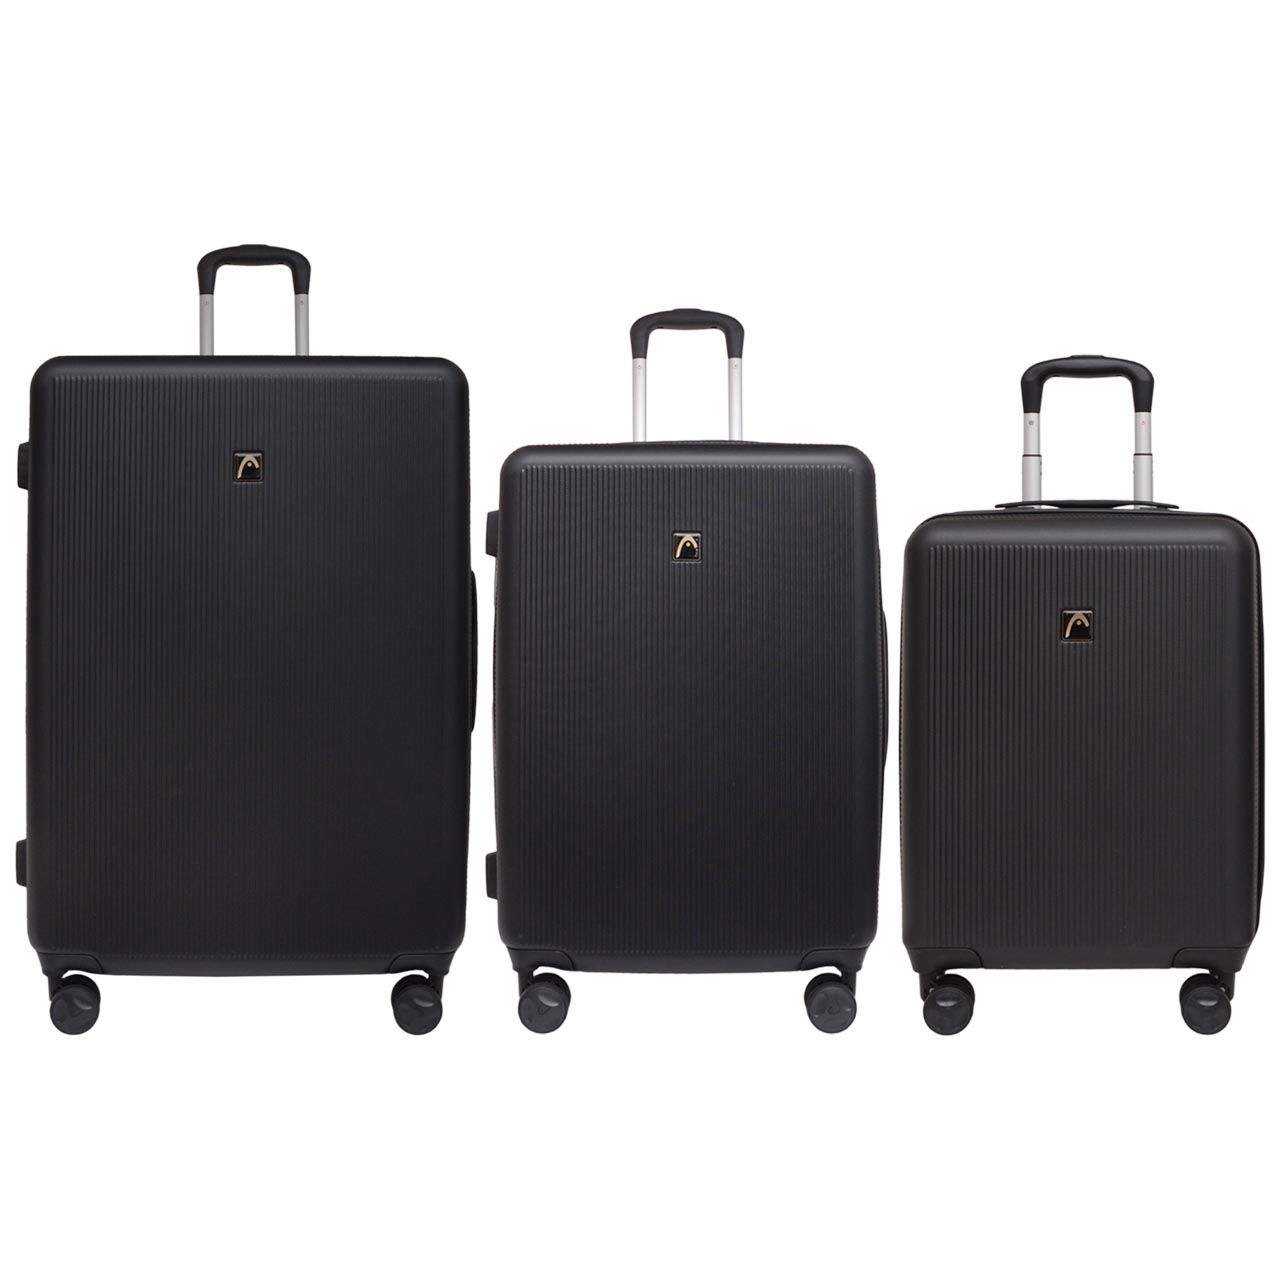 مجموعه سه عددی چمدان هد مدل HL 006 -  - 4